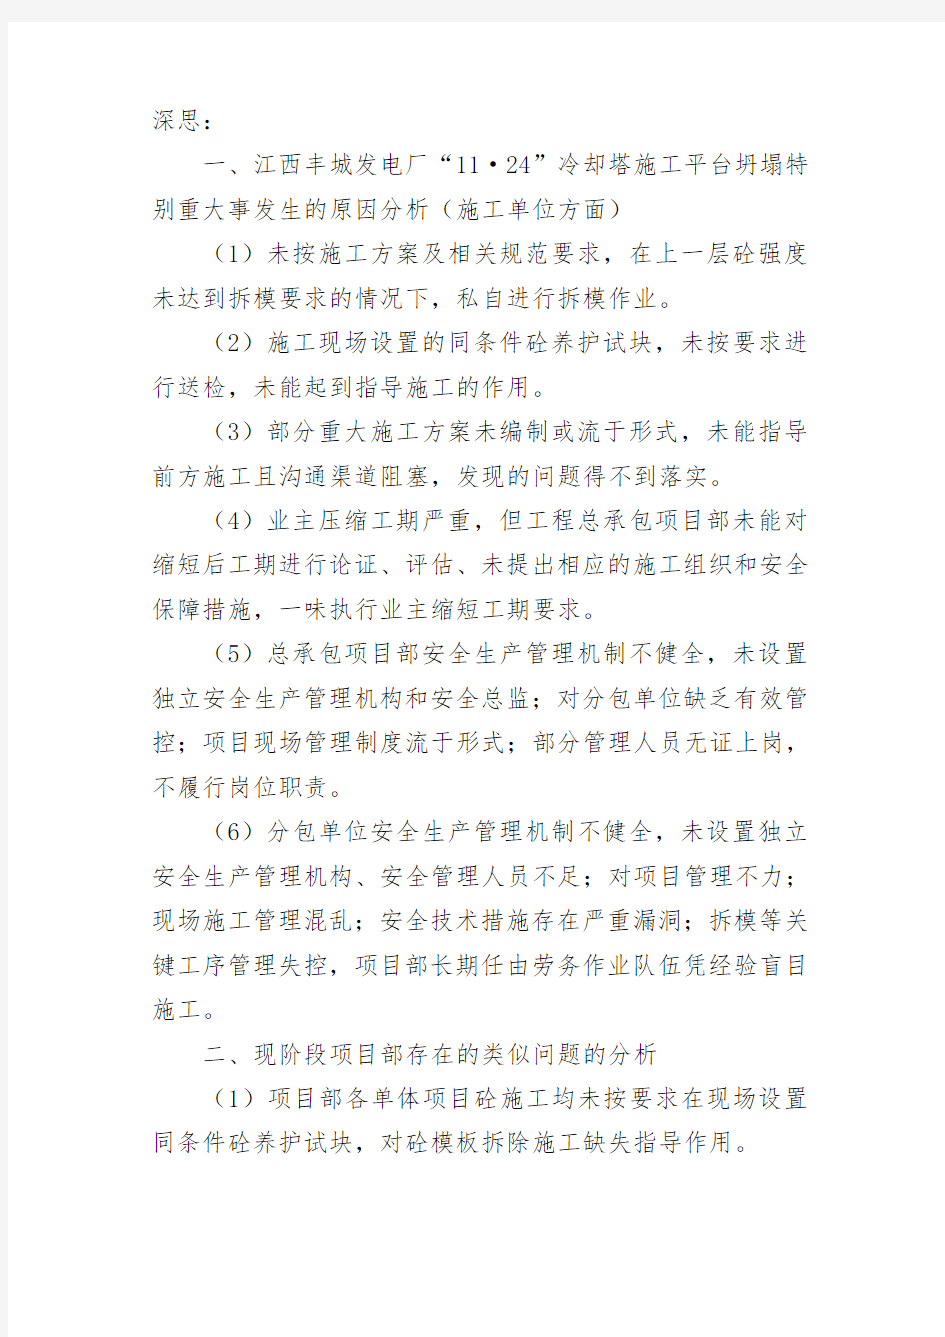 学习“江西丰城发电厂“ ”冷却塔施工平台坍塌特别重大事故调查报告”的总结